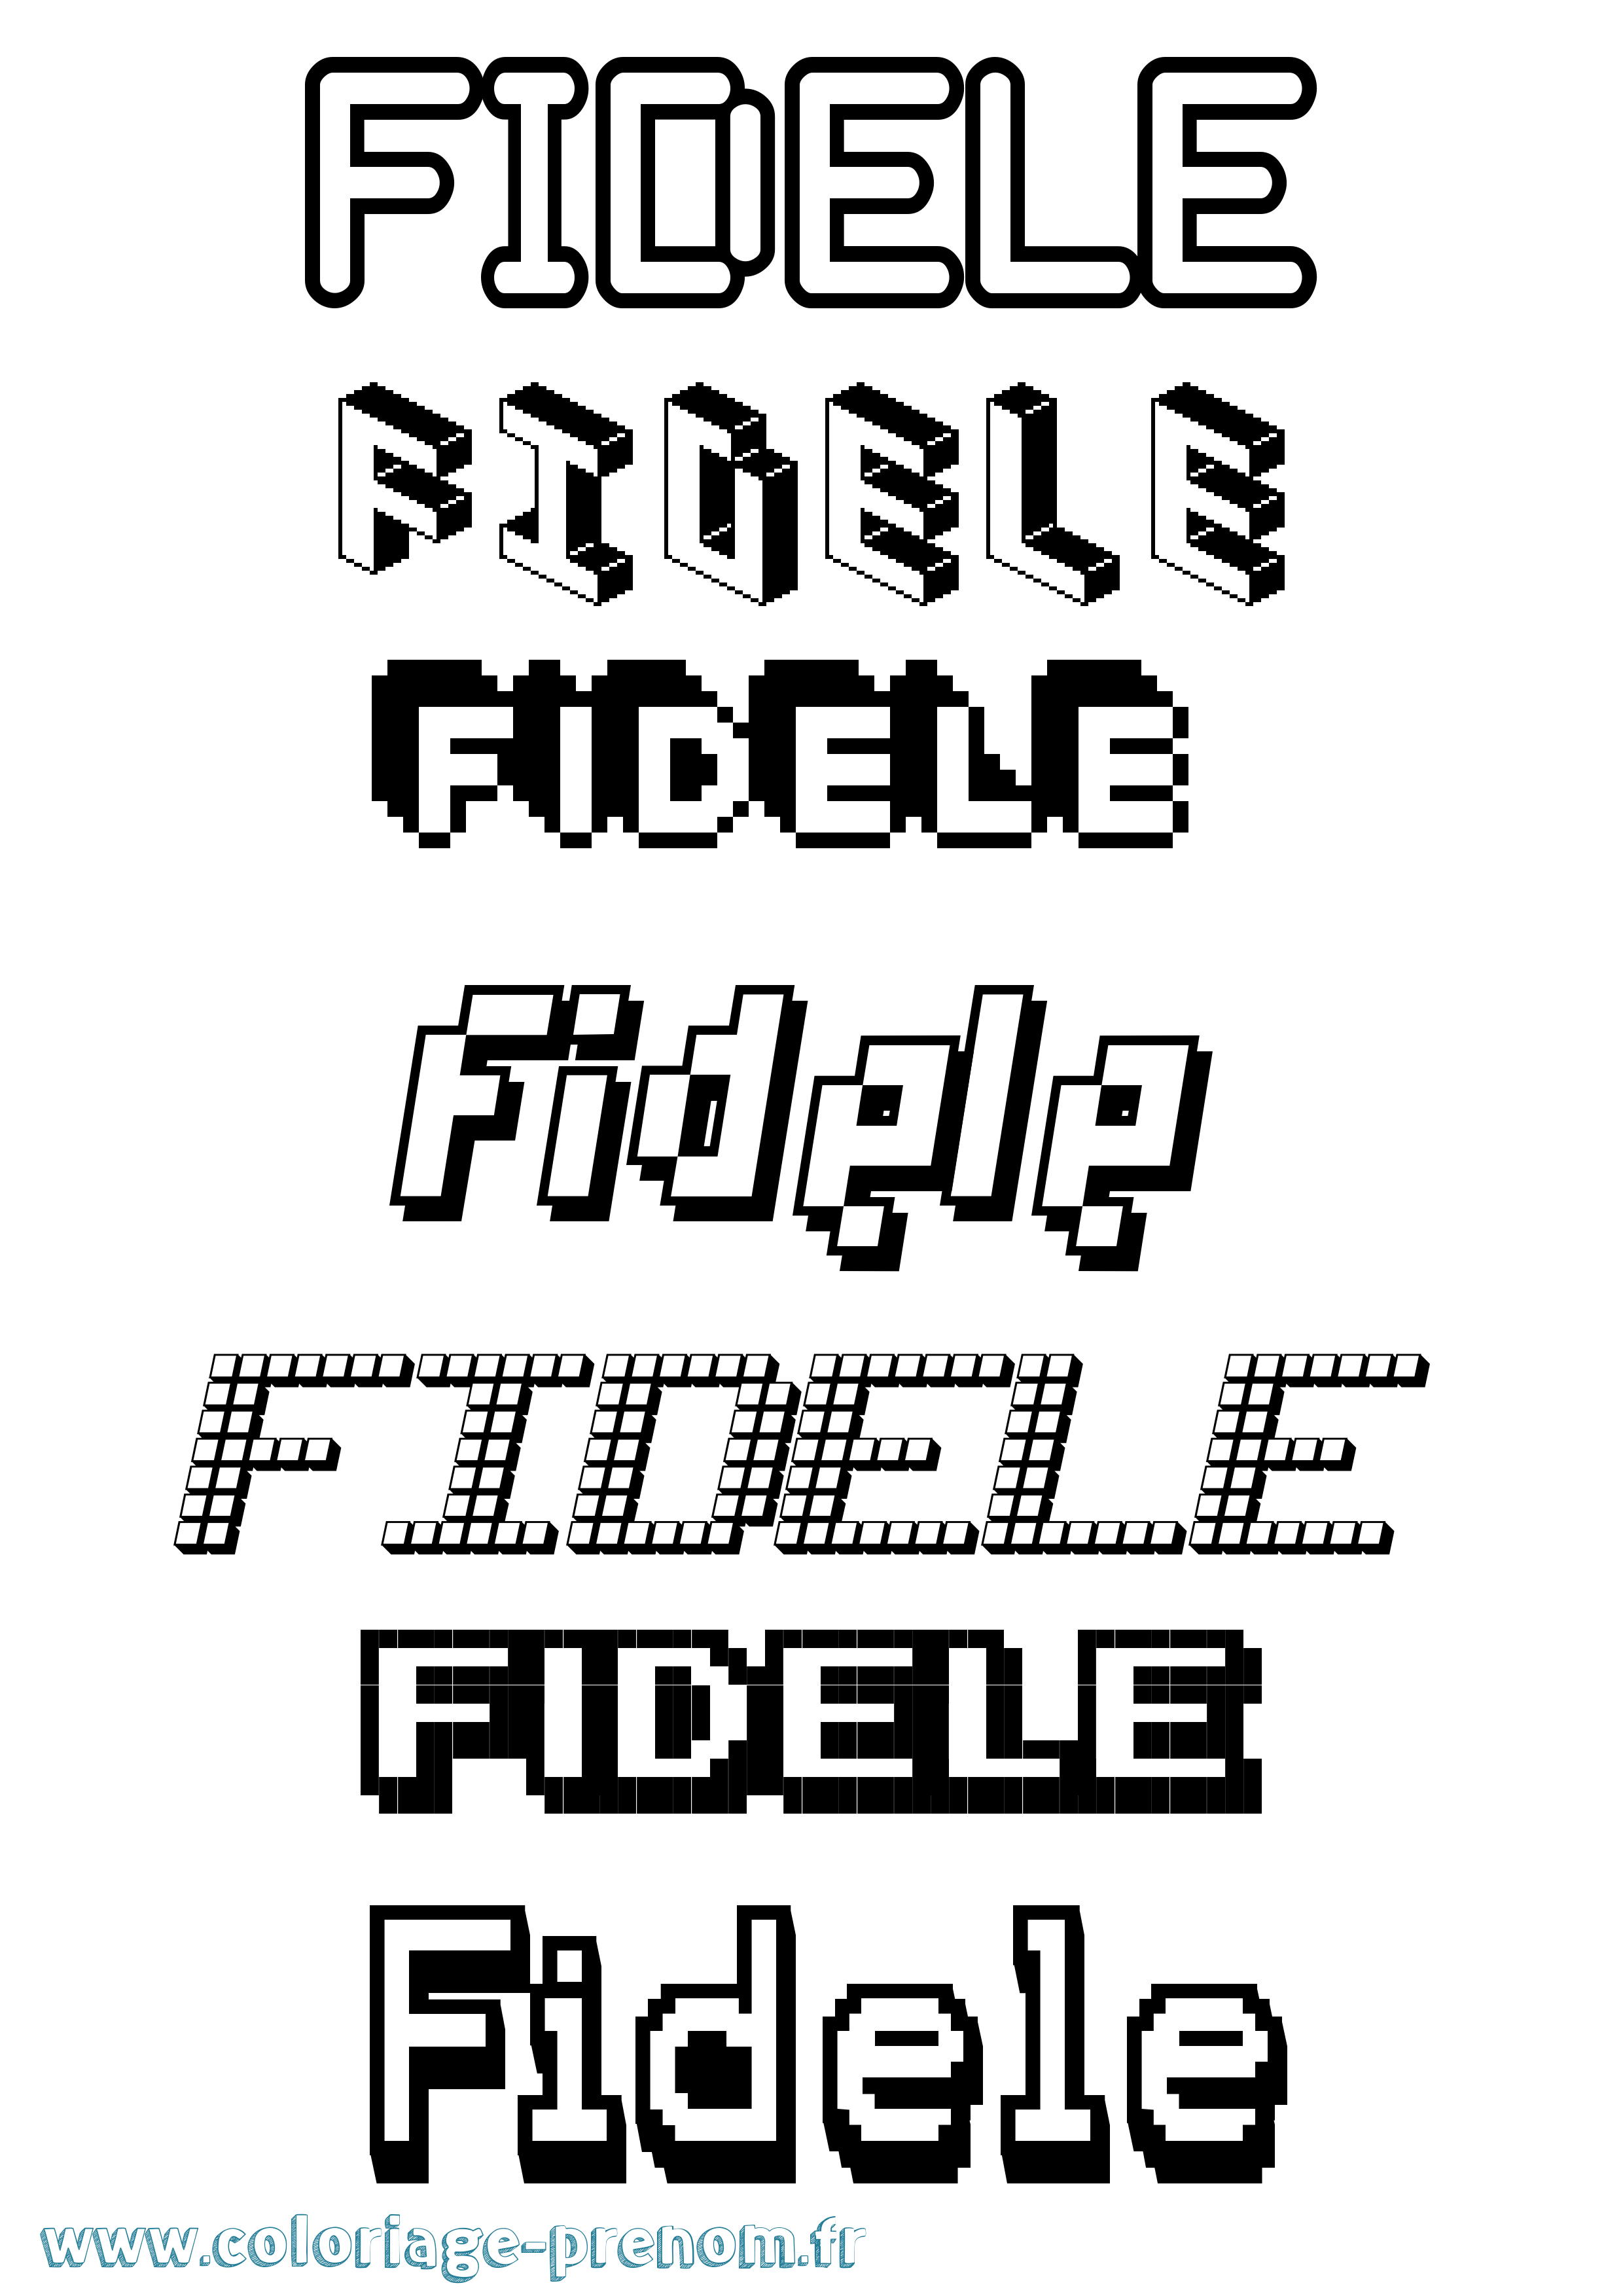 Coloriage prénom Fidele Pixel